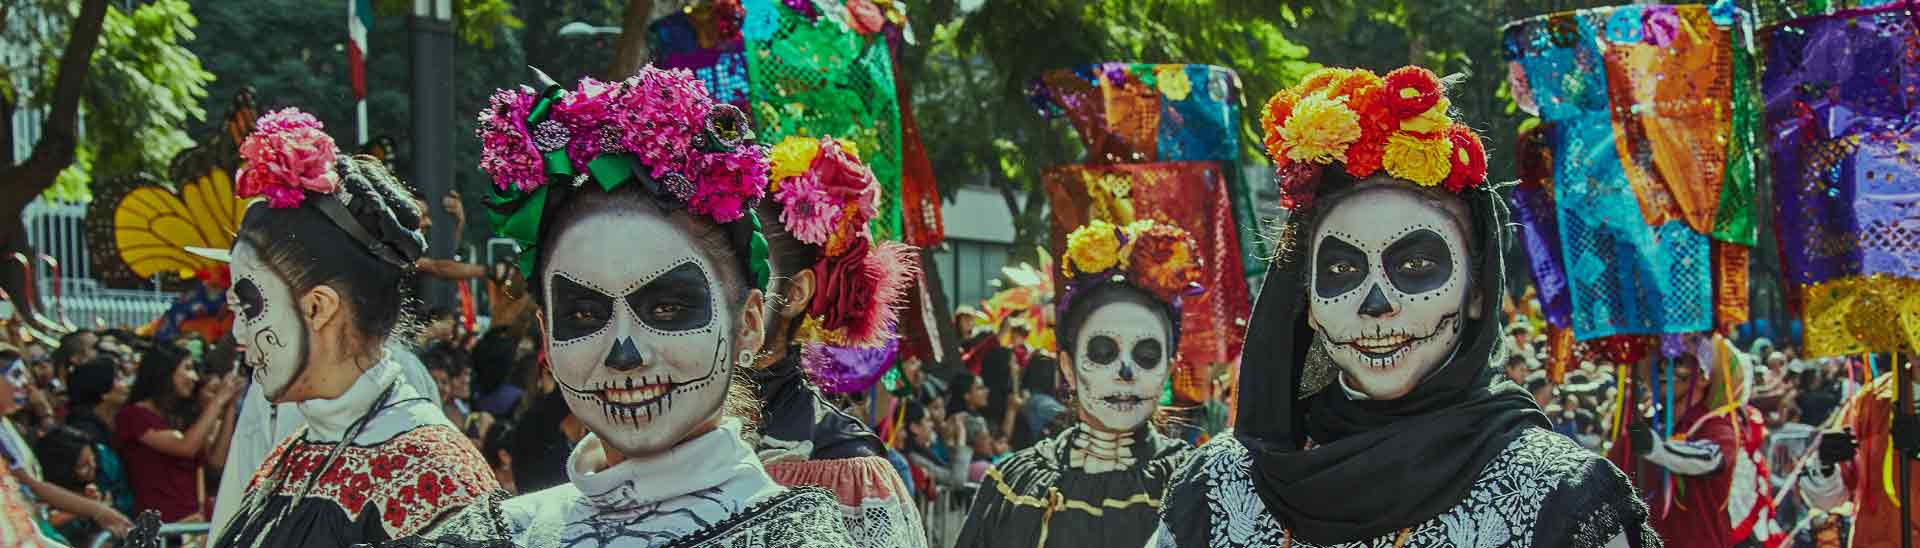 Convocatoria México 2019 - Misión académica y empresarial Gestión, patrimonio y turismo cultural